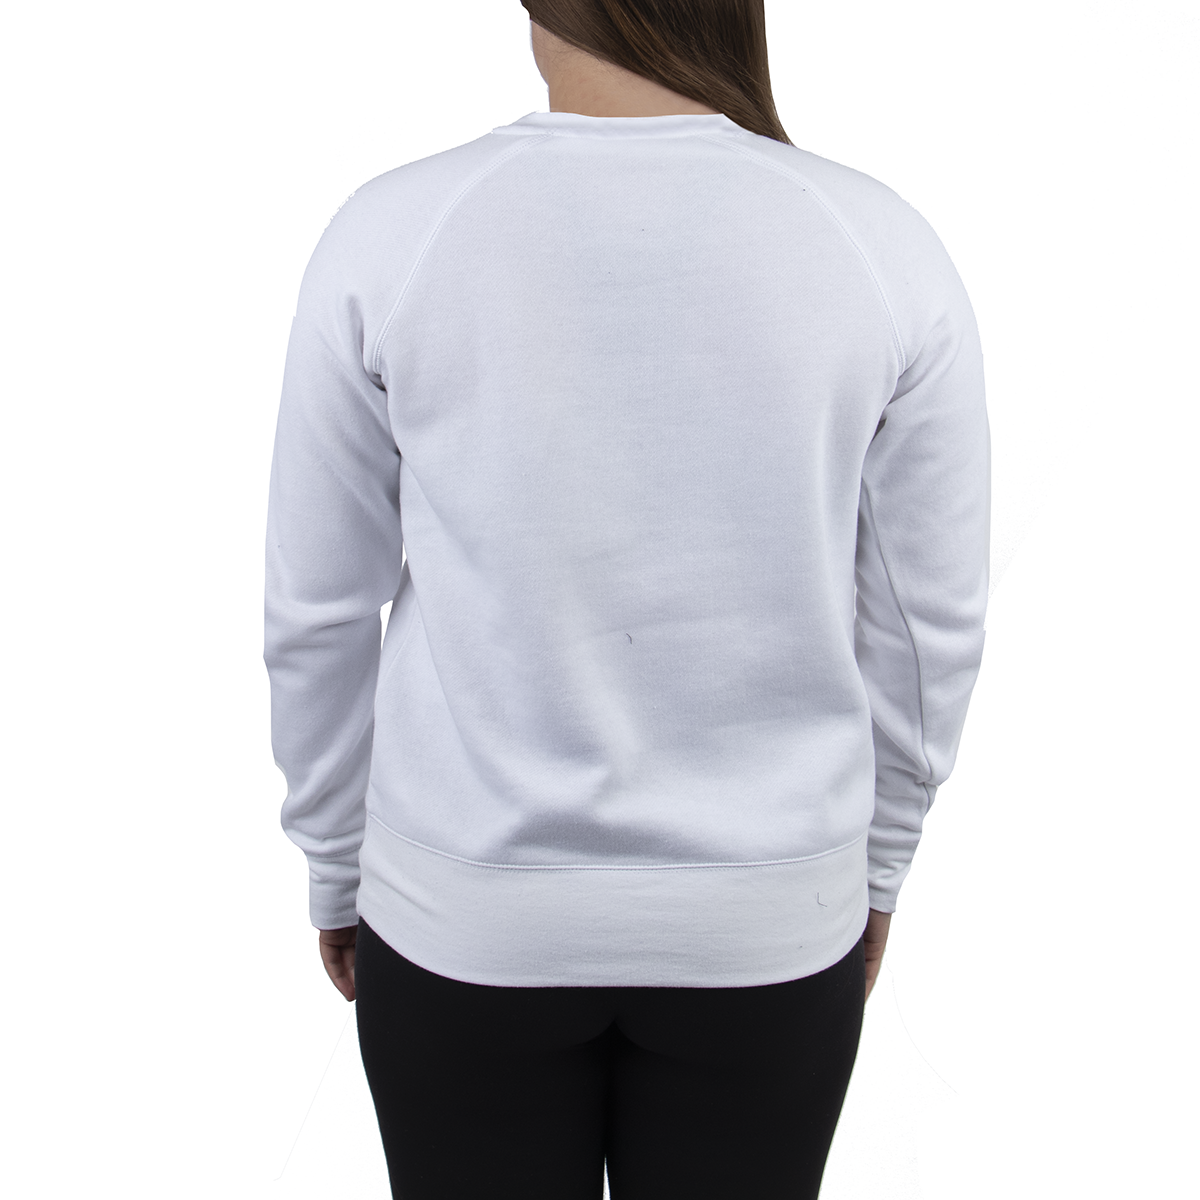 Women's Kruger Fleece Crewneck Sweatshirt - White